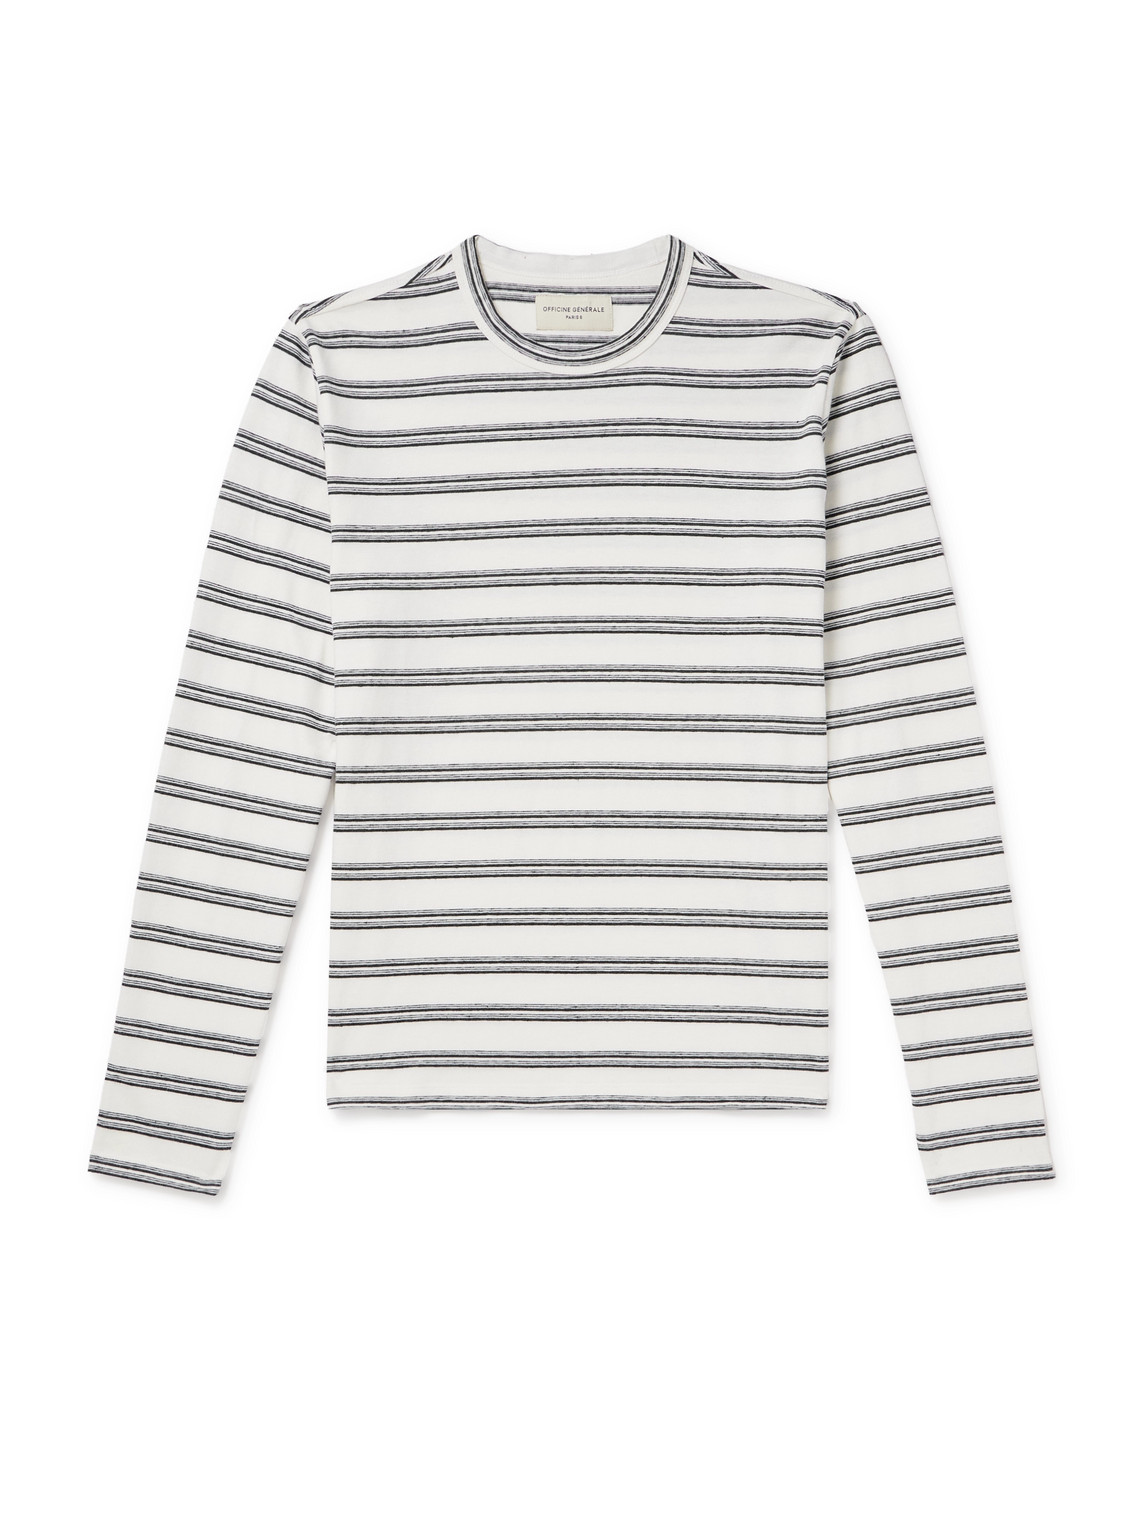 Officine Générale - Striped Cotton and Linen-Blend T-Shirt - Men - Multi - XS von Officine Générale